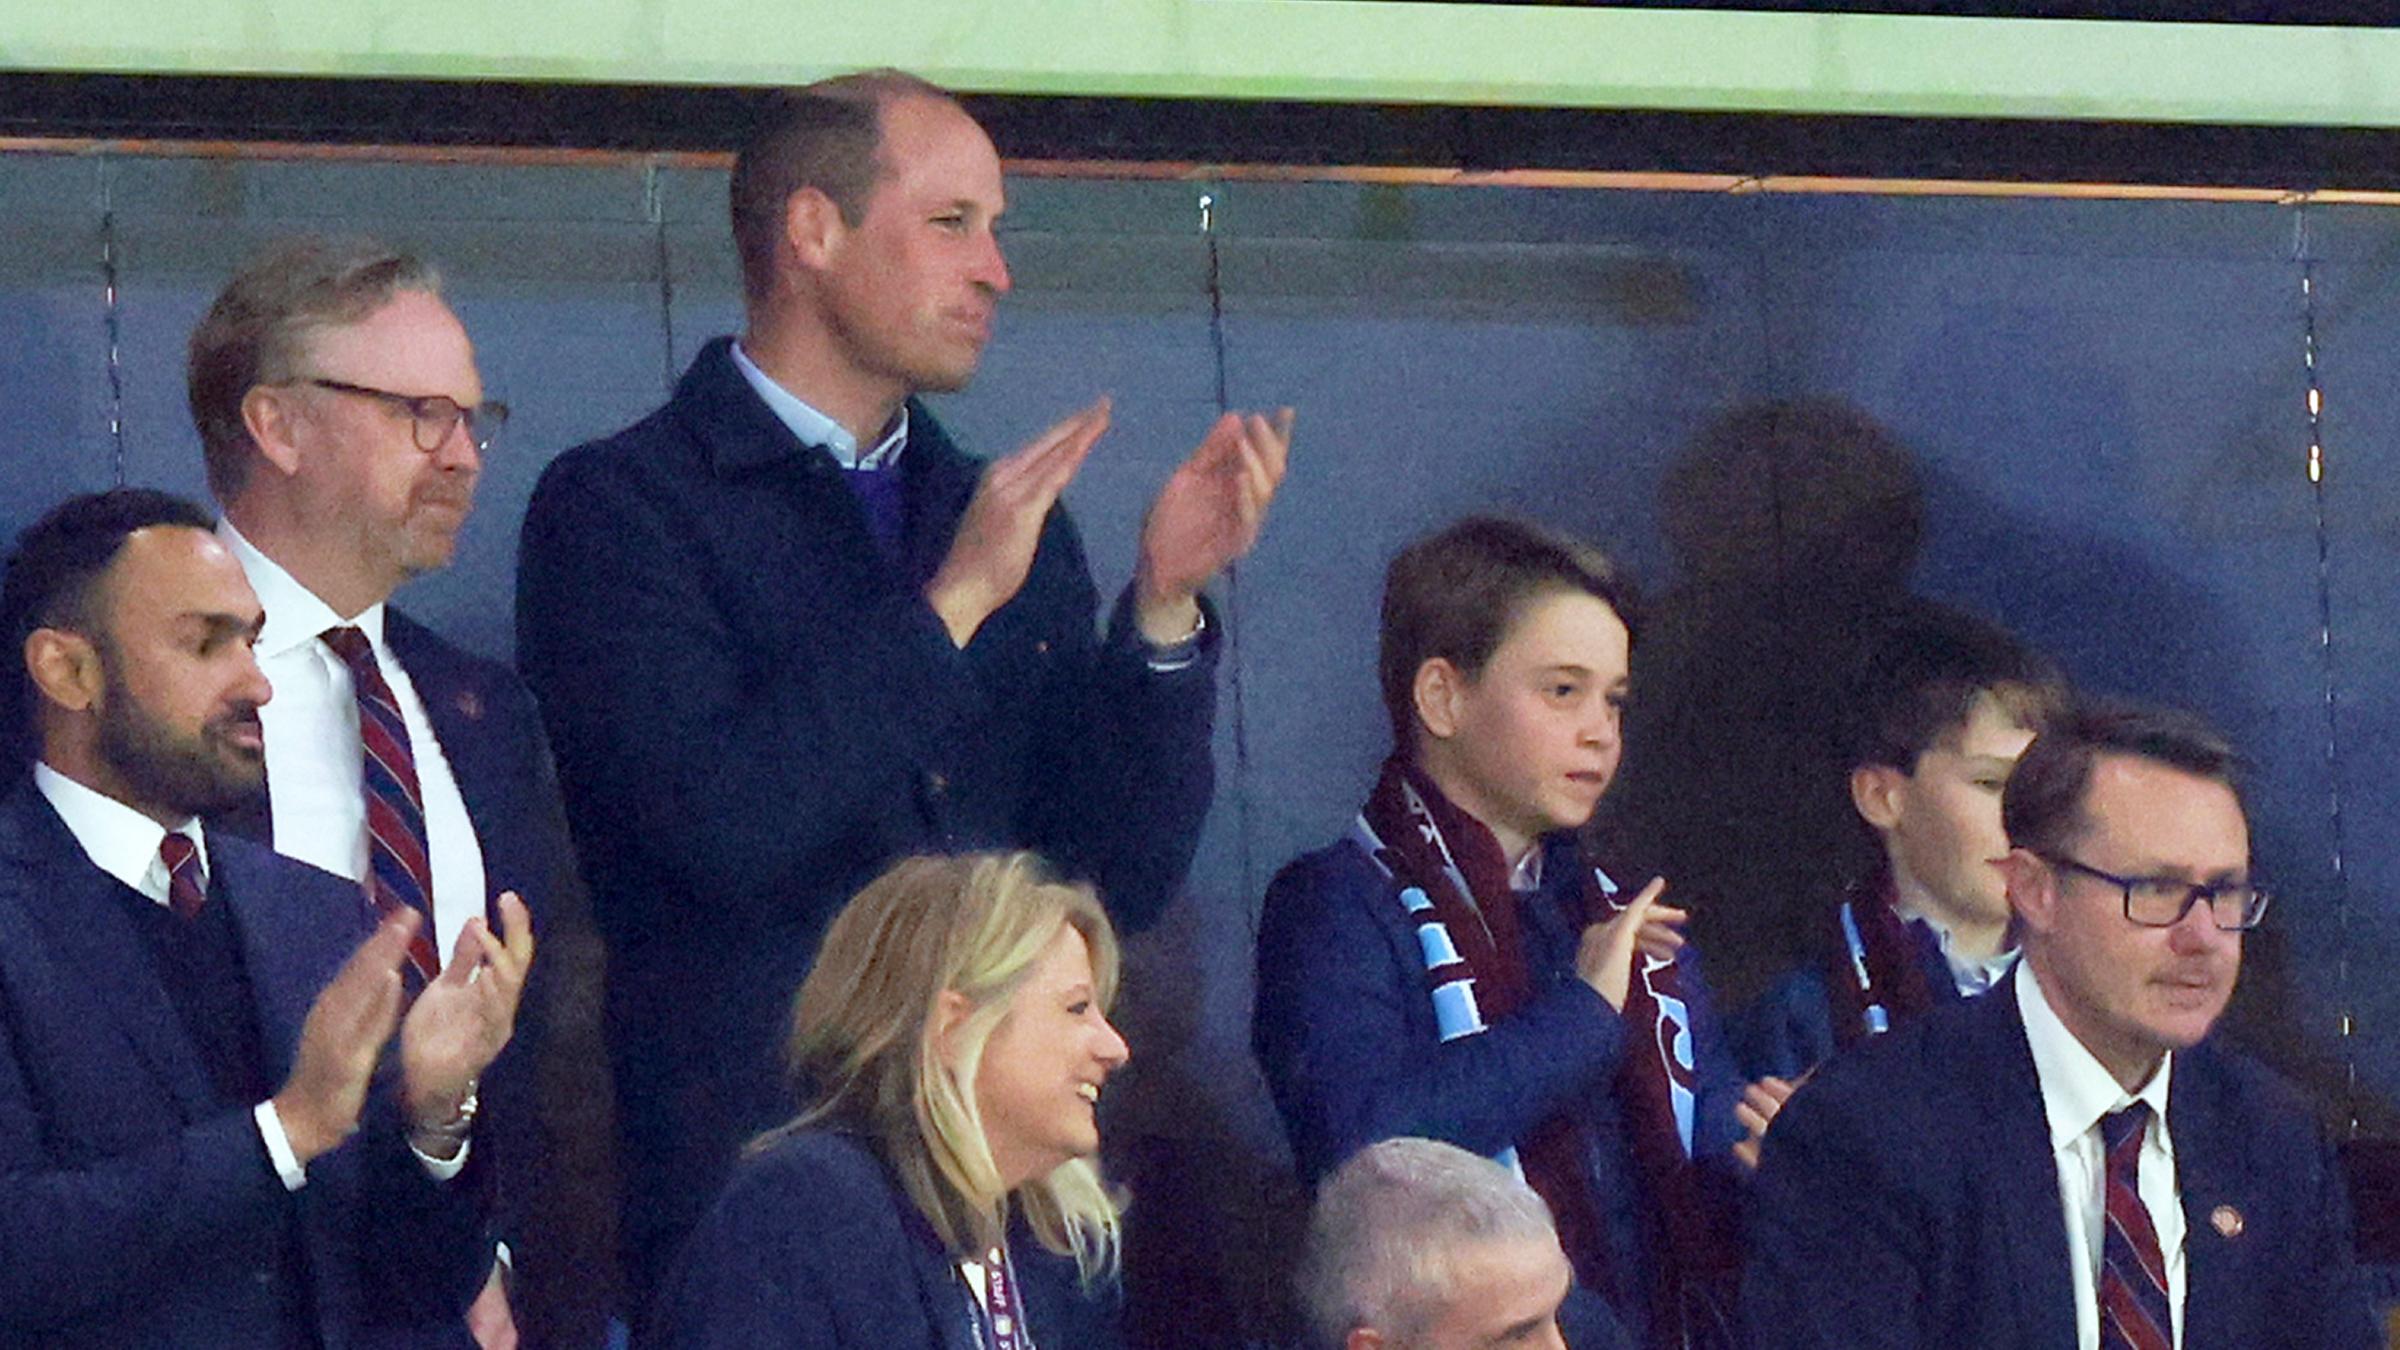 Prinz William mit Sohn George stehend auf der Tribüne während eines Fussballspiels